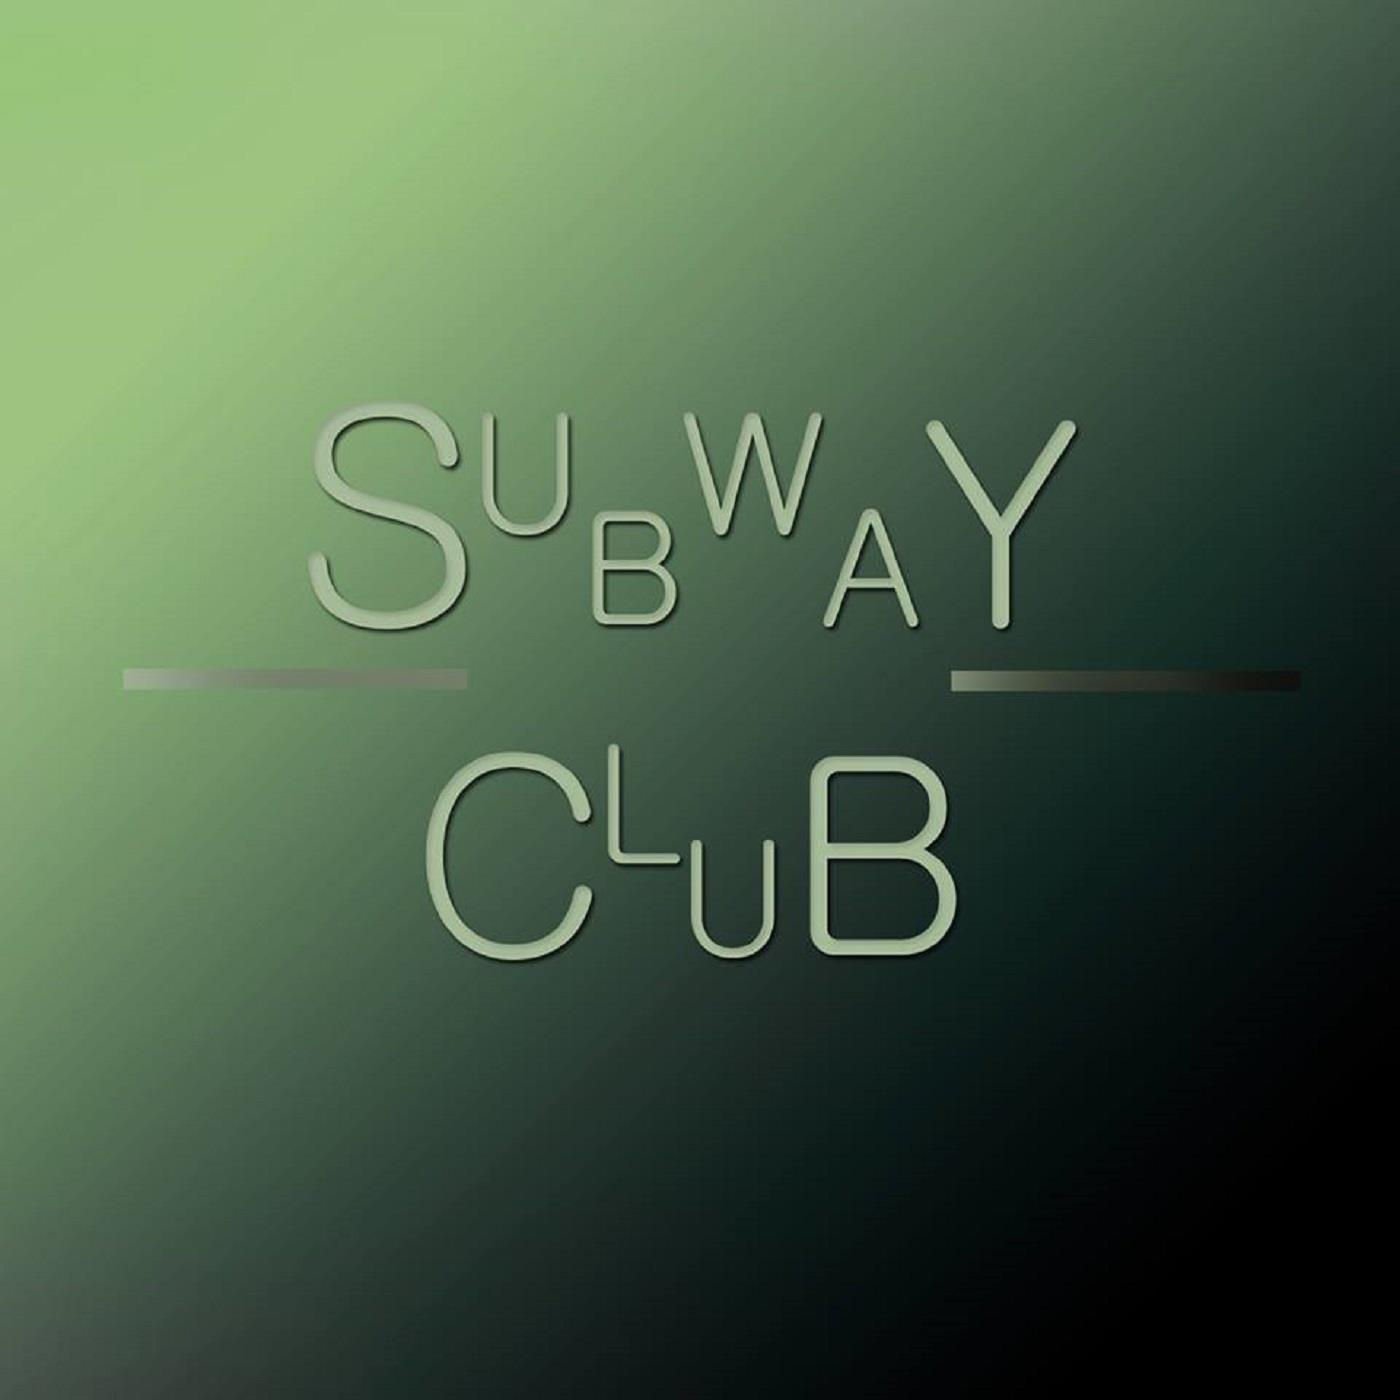 Subway Club EP